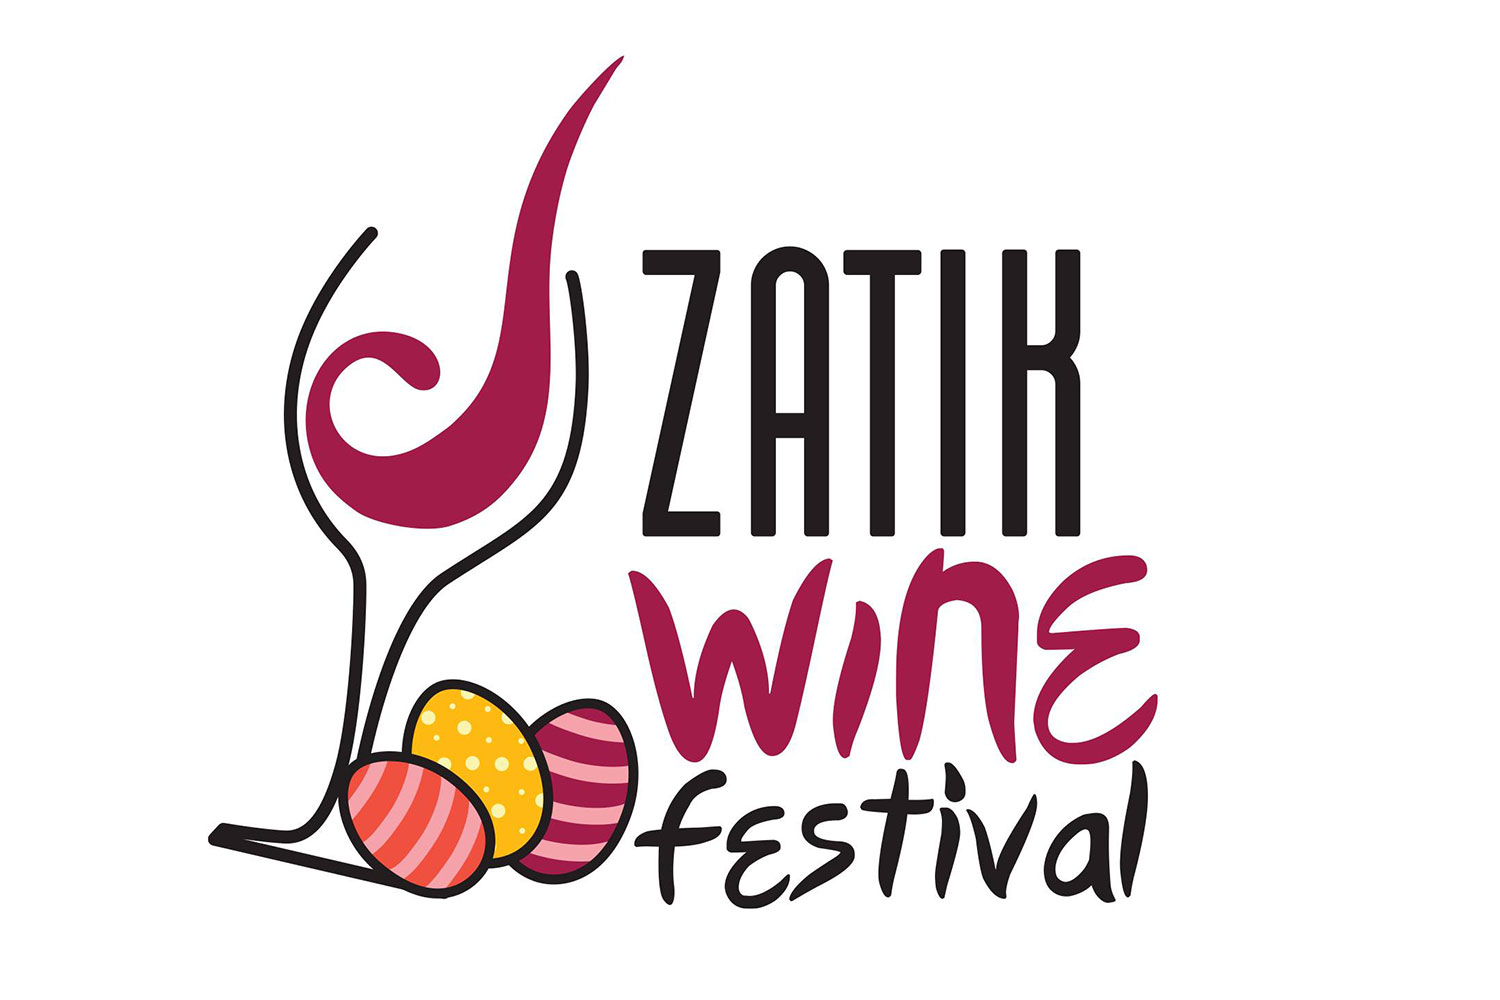 Zatik Wine Festival to be held on April 15